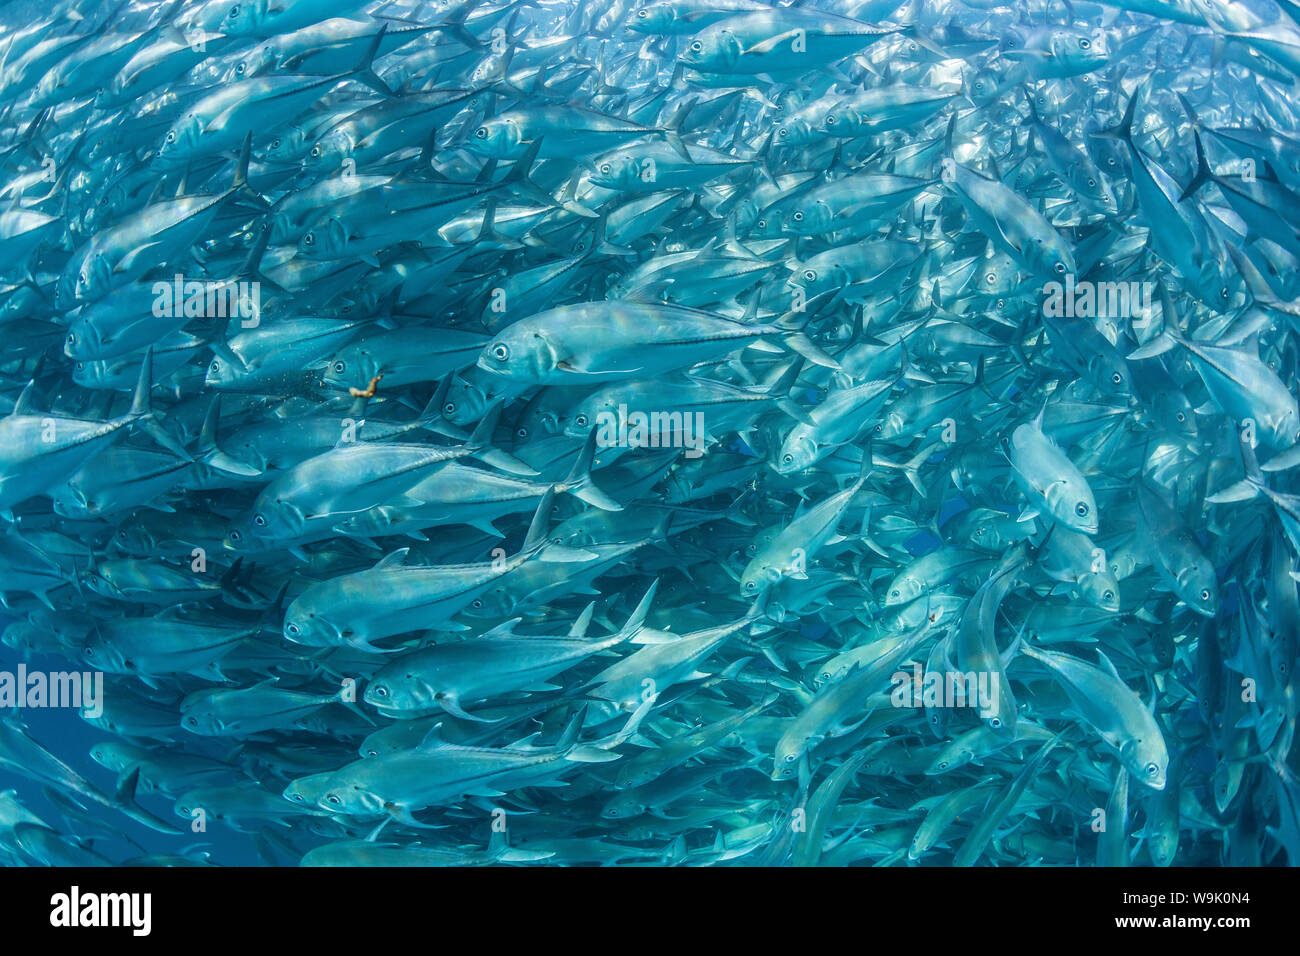 Una gran escuela de patudo jureles (Caranx sexfasciatus) en aguas profundas cerca de Cabo Pulmo, Baja California Sur, México, América del Norte Foto de stock